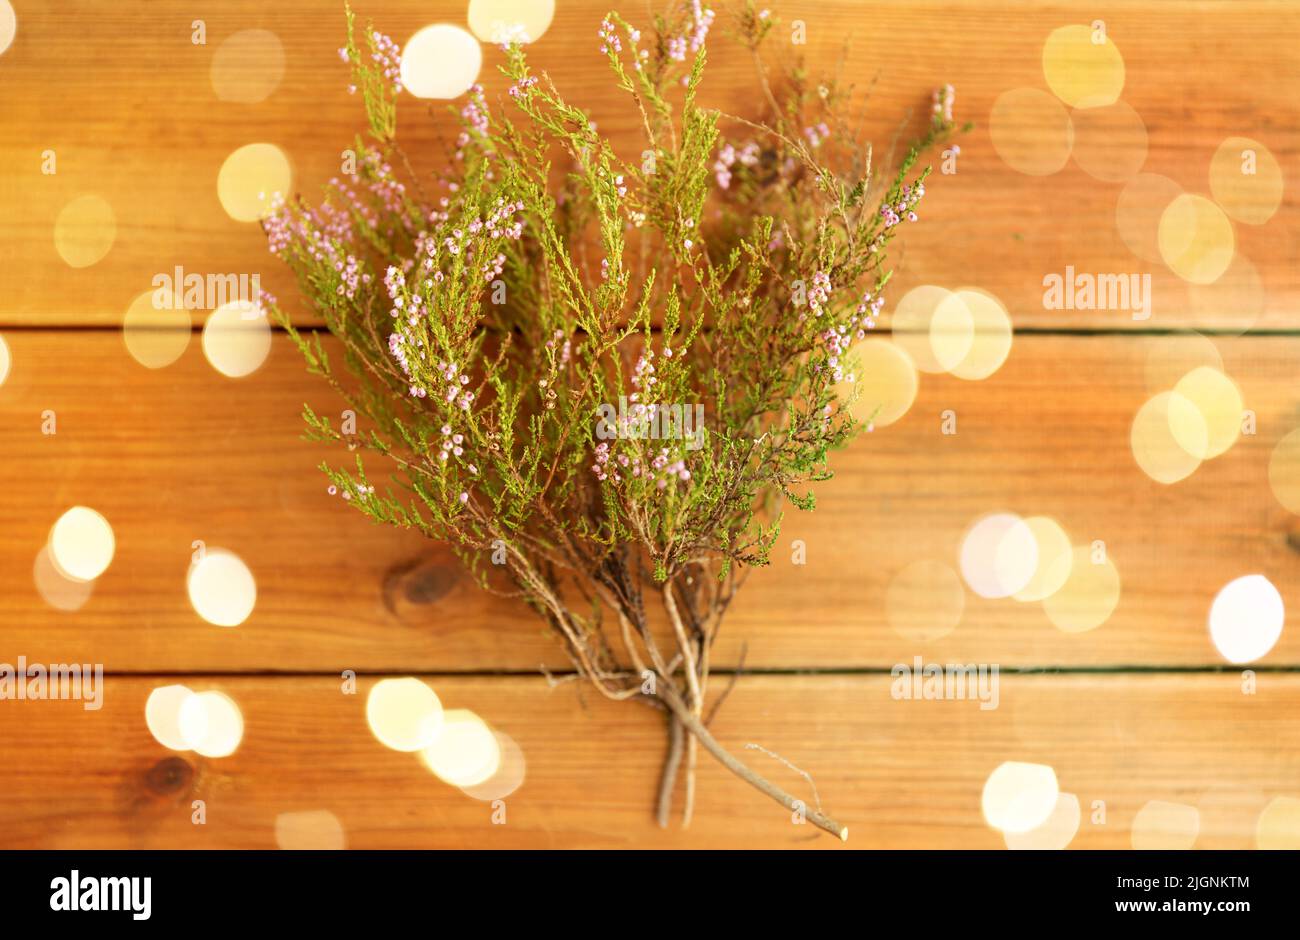 heather bush on wooden table Stock Photo